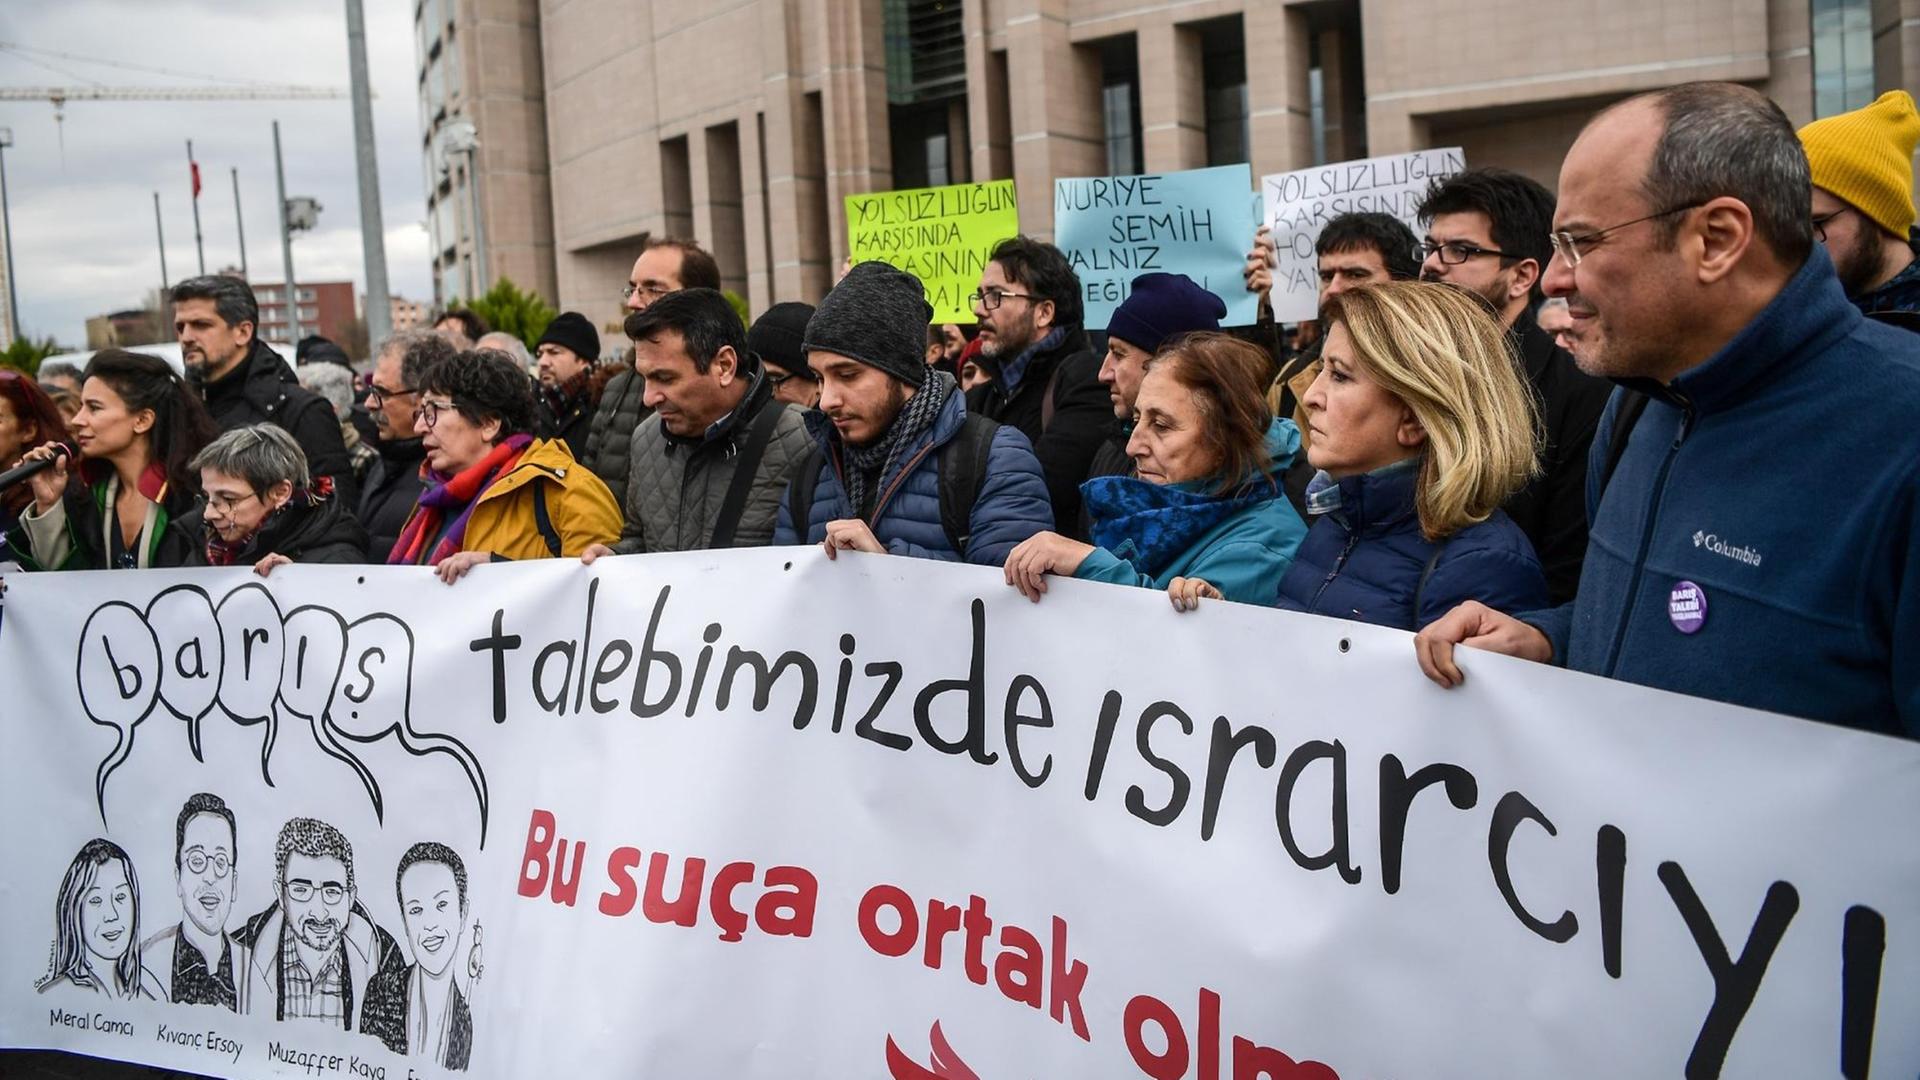 Demonstranten am 5.12.2017 in Istanbul, Türkei, vor dem Gerichtsgebäude, um eine Gruppe von Akademikern vor Gericht zu unterstützen